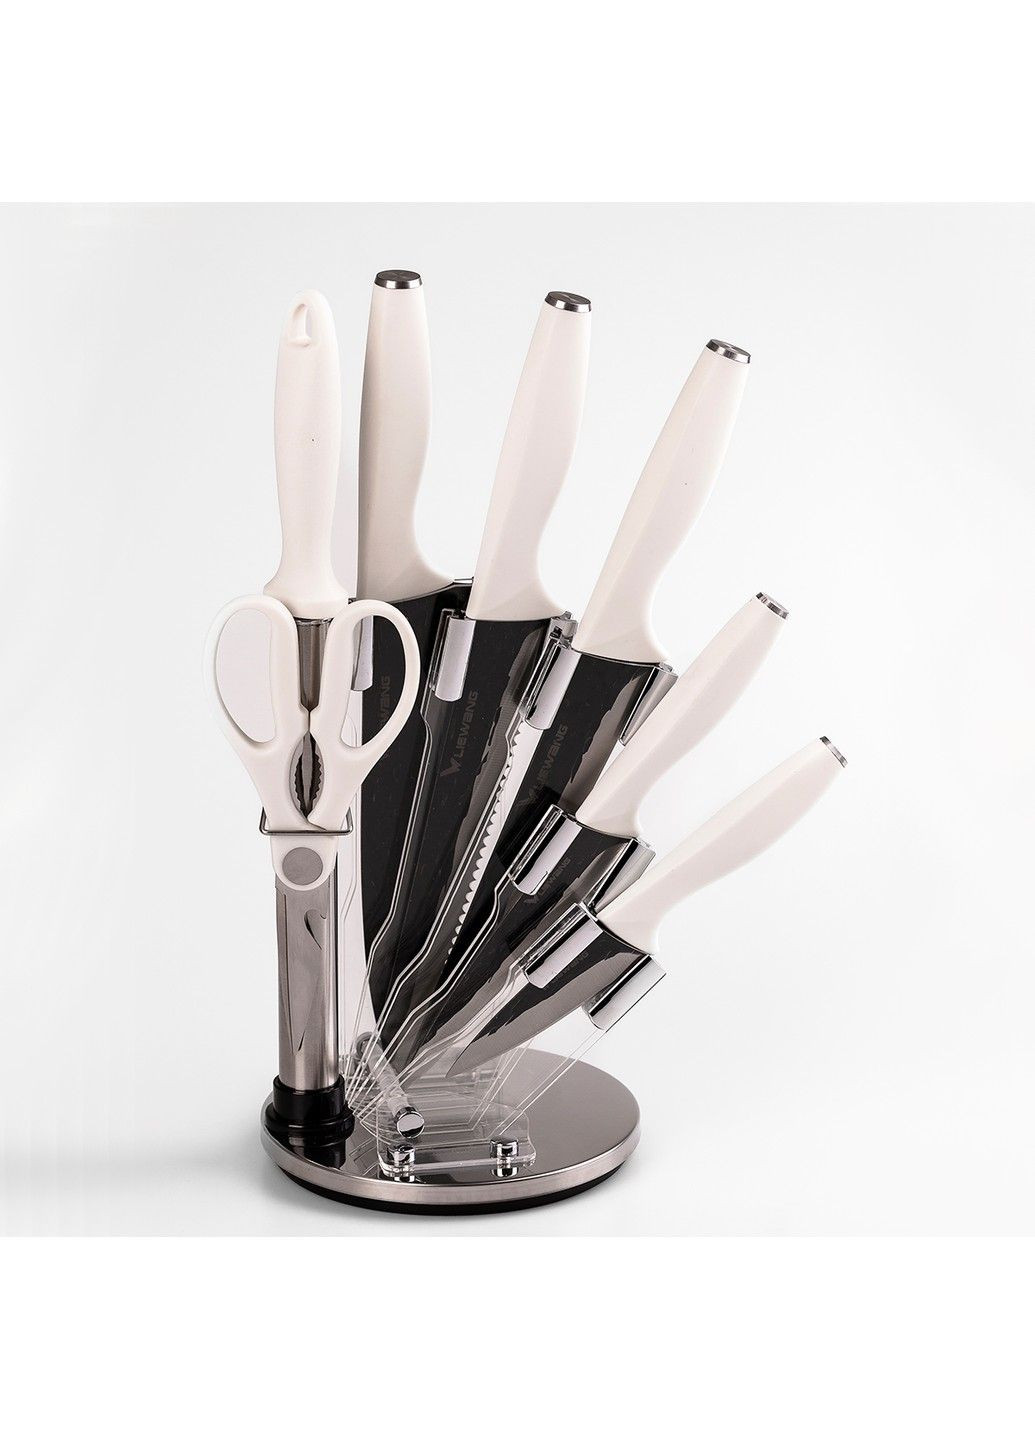 Набор кухонных ножей на подставке 7 предметов Without (293061827)